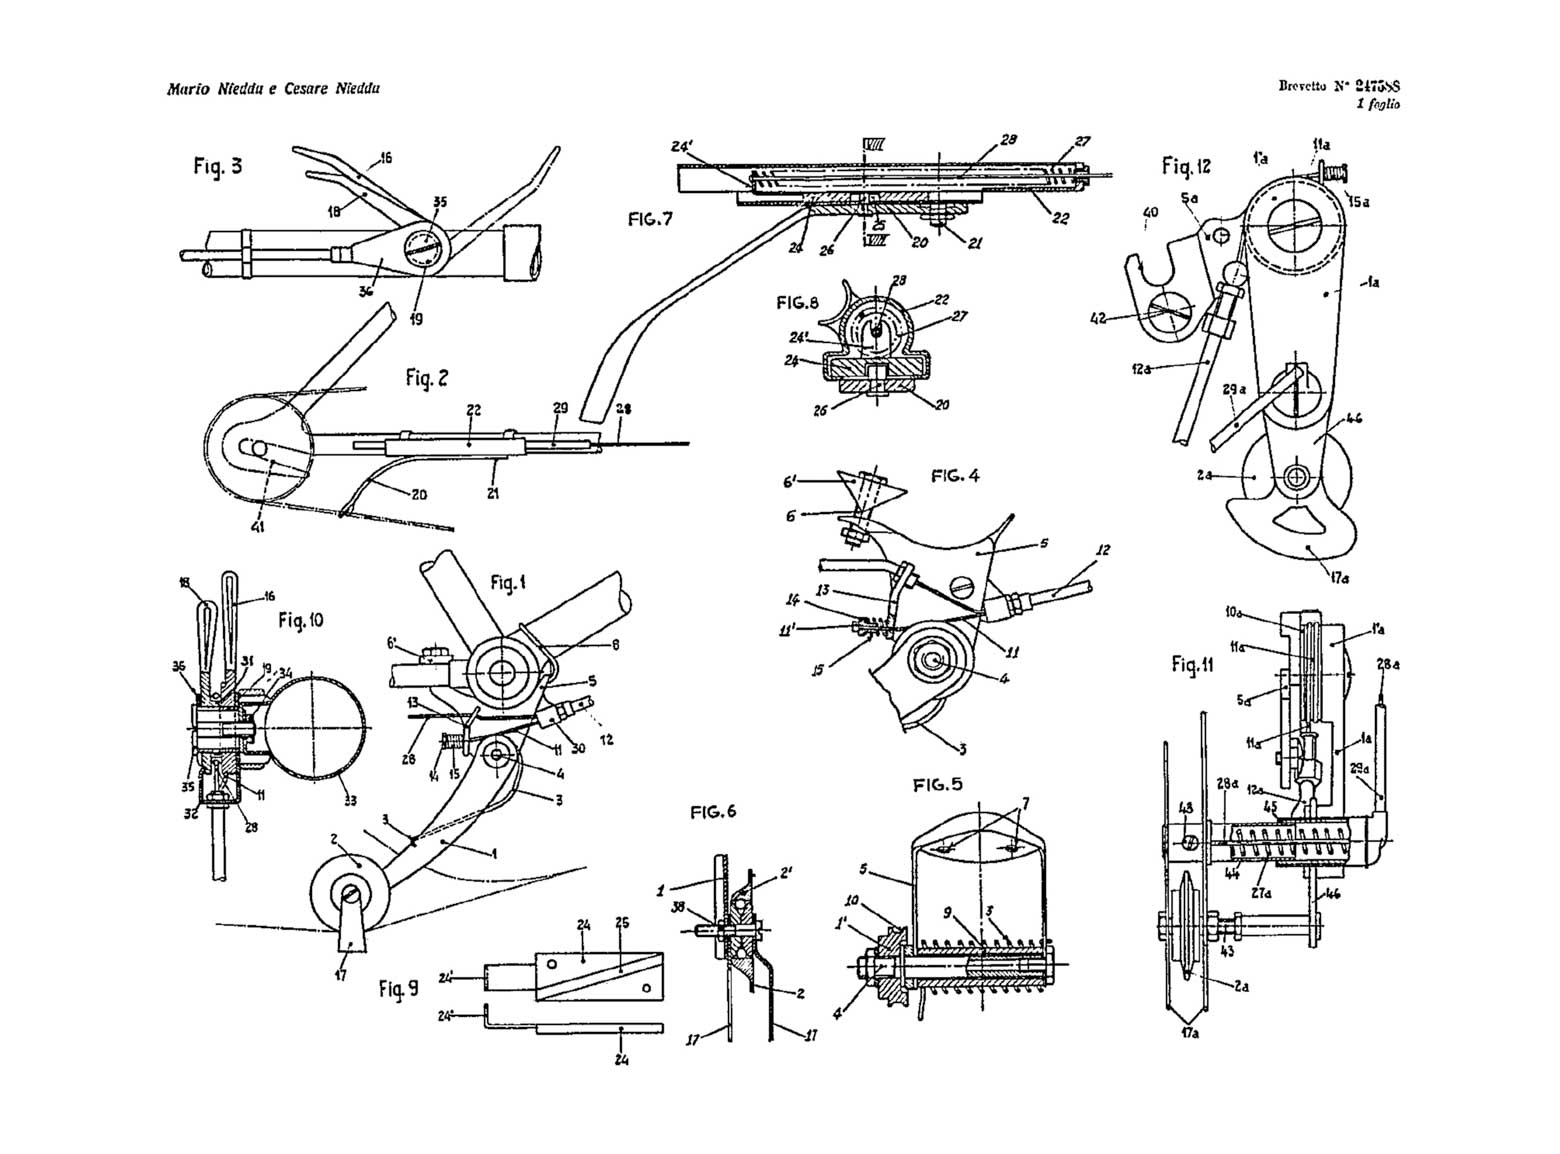 Swiss Patent 247,588 - Vittoria scan 7 main image